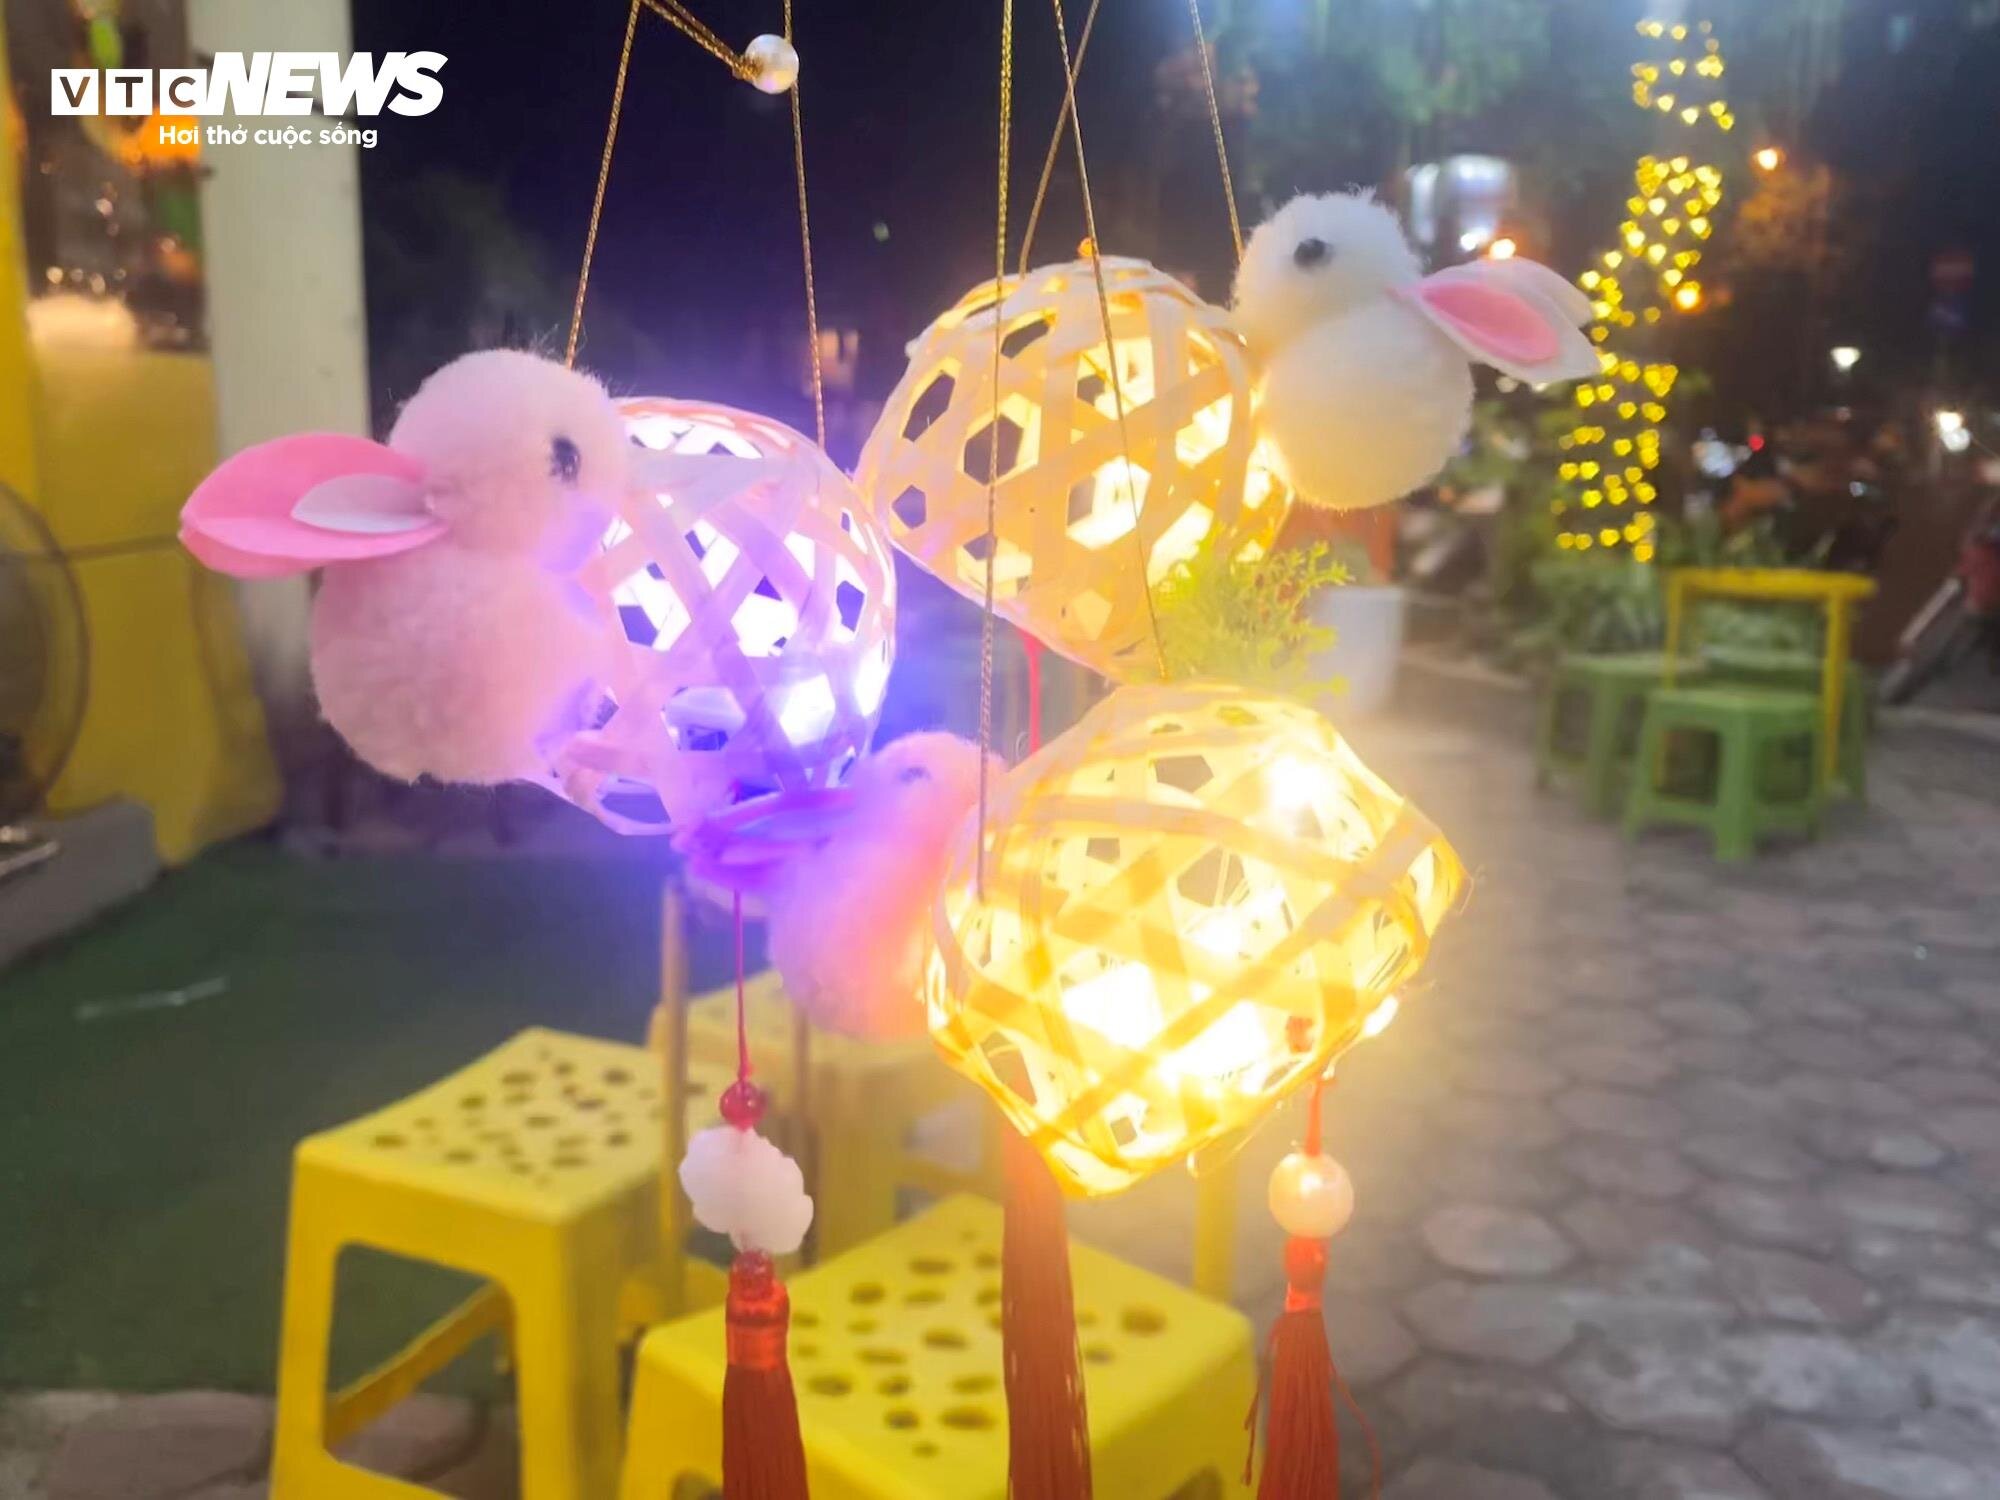 Cận cảnh món đồ chơi mới nhất và cũng đang hot nhất trên thị trường Trung thu ở Hà Nội.